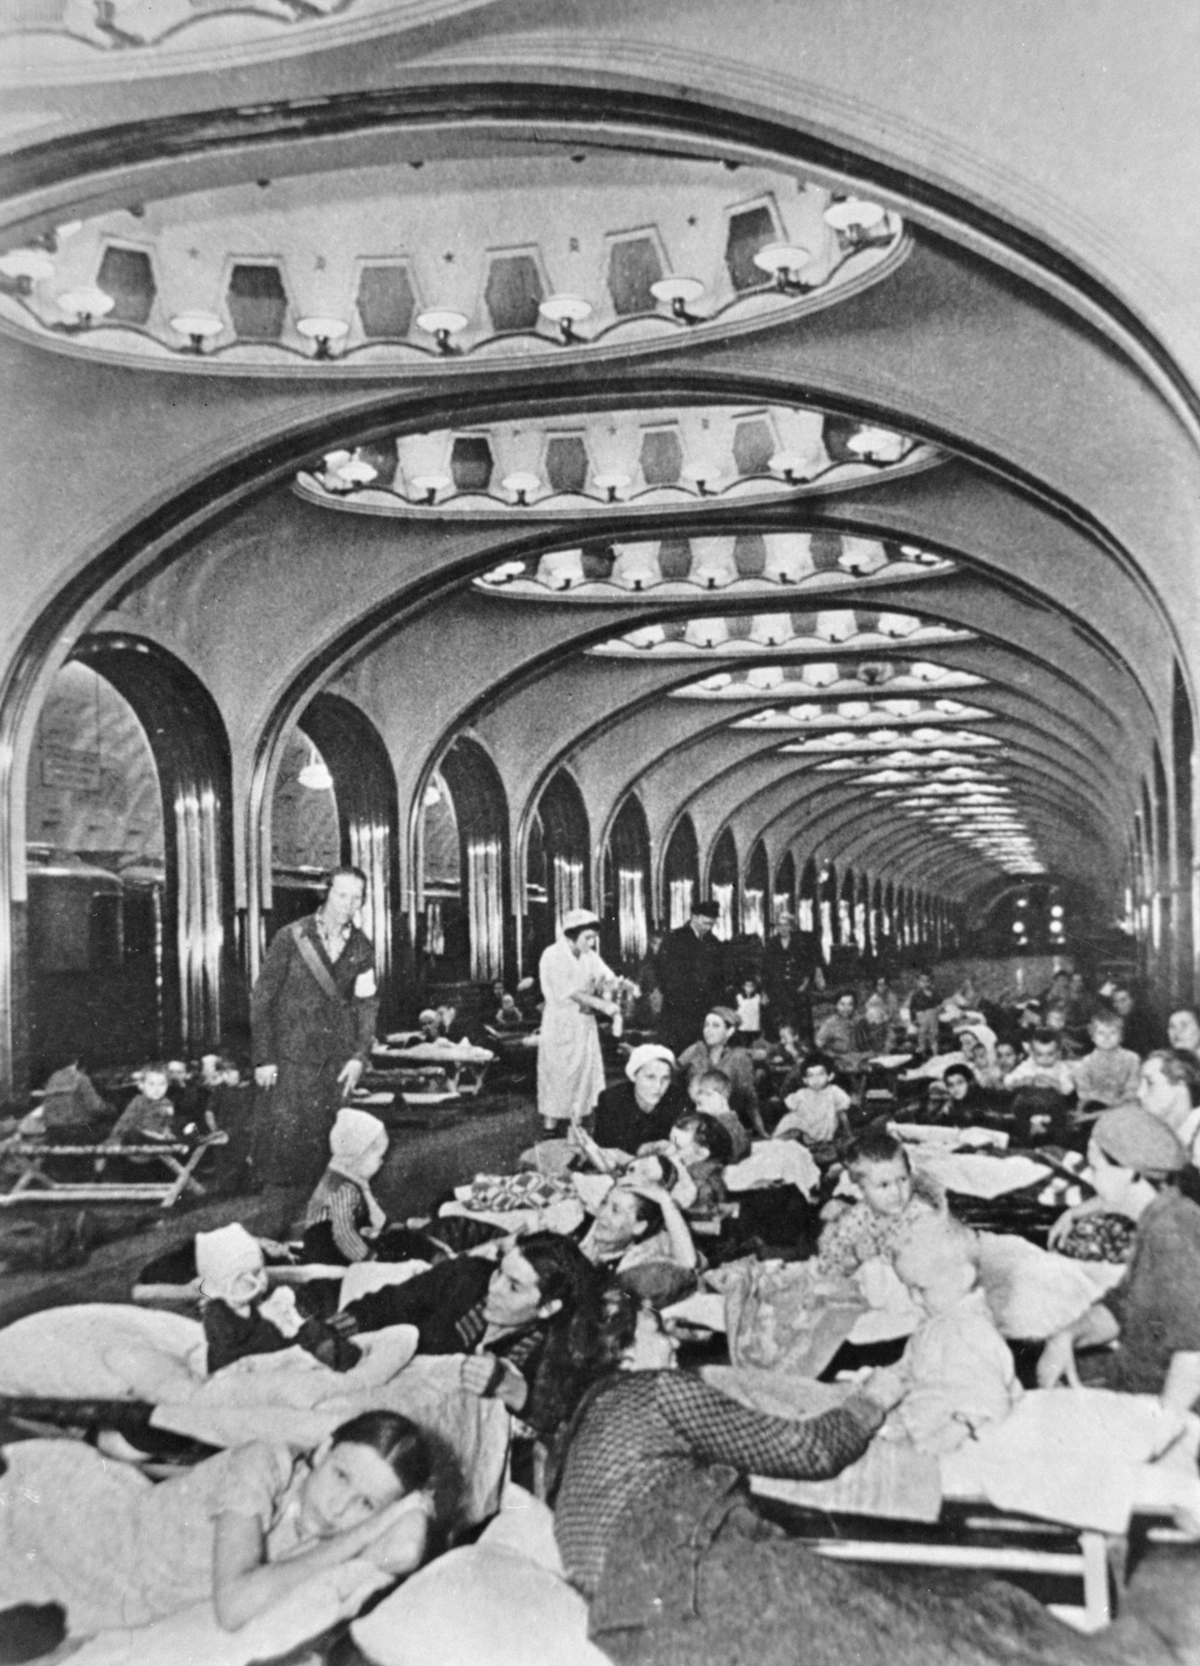 Октябрь 1941 г. Жители города на станции метро "Маяковская" во время воздушной тревоги.